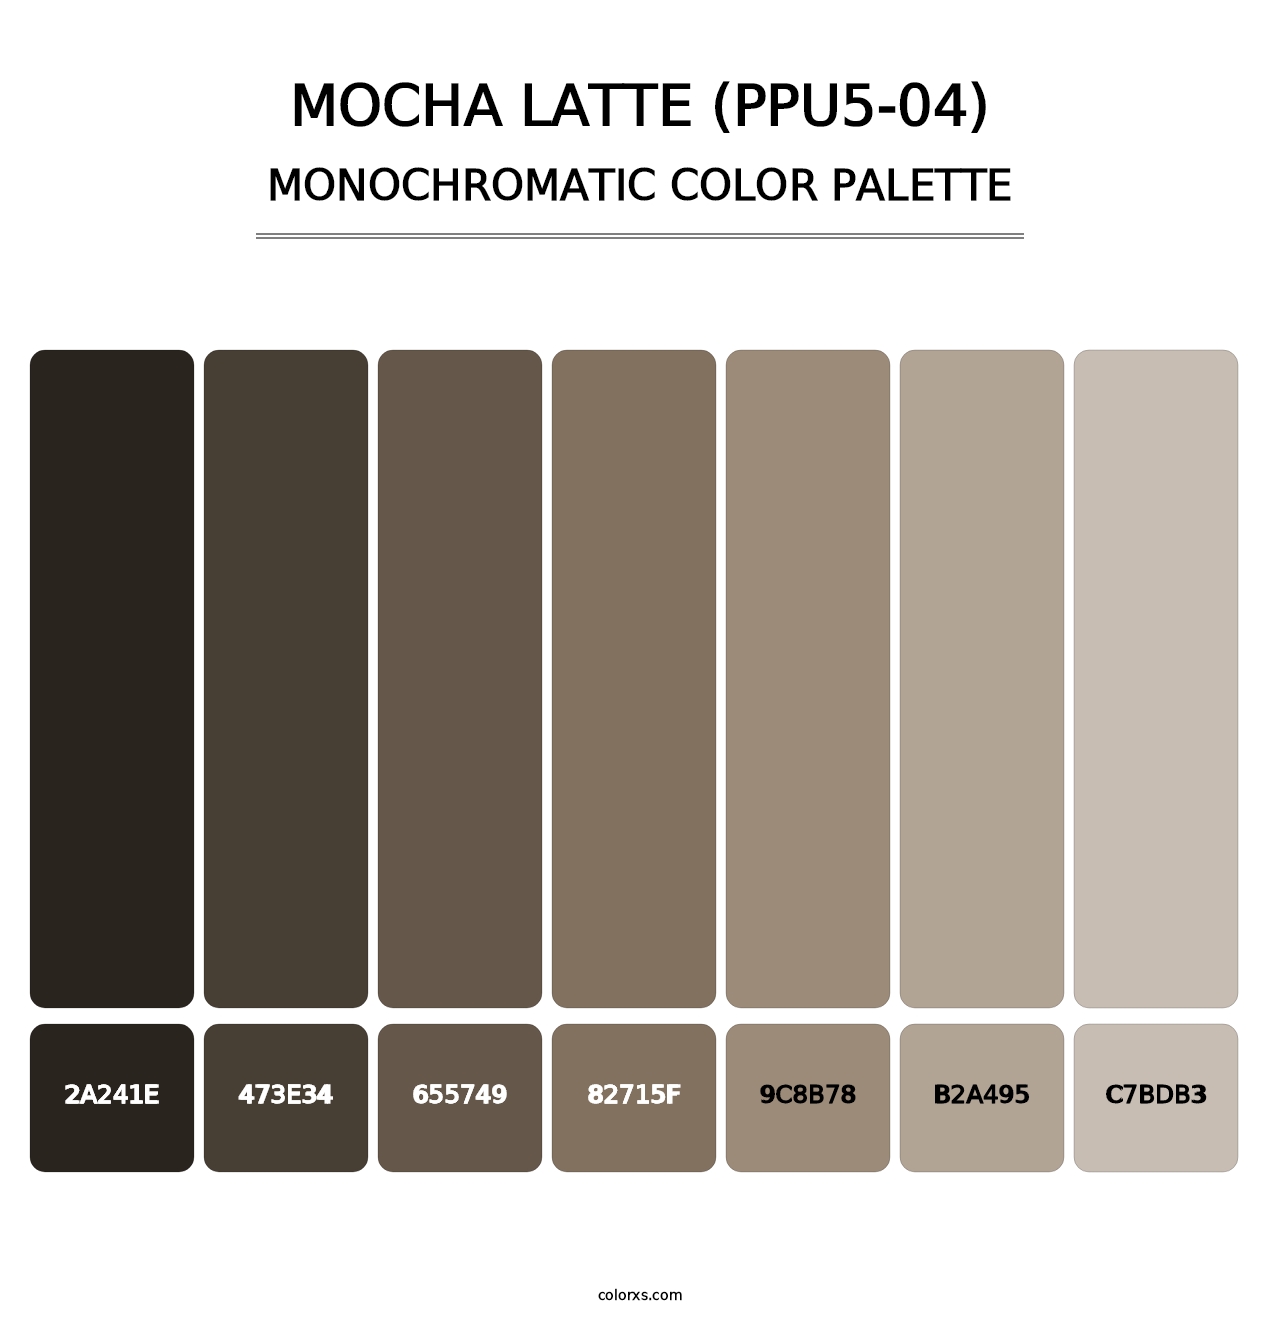 Mocha Latte (PPU5-04) - Monochromatic Color Palette